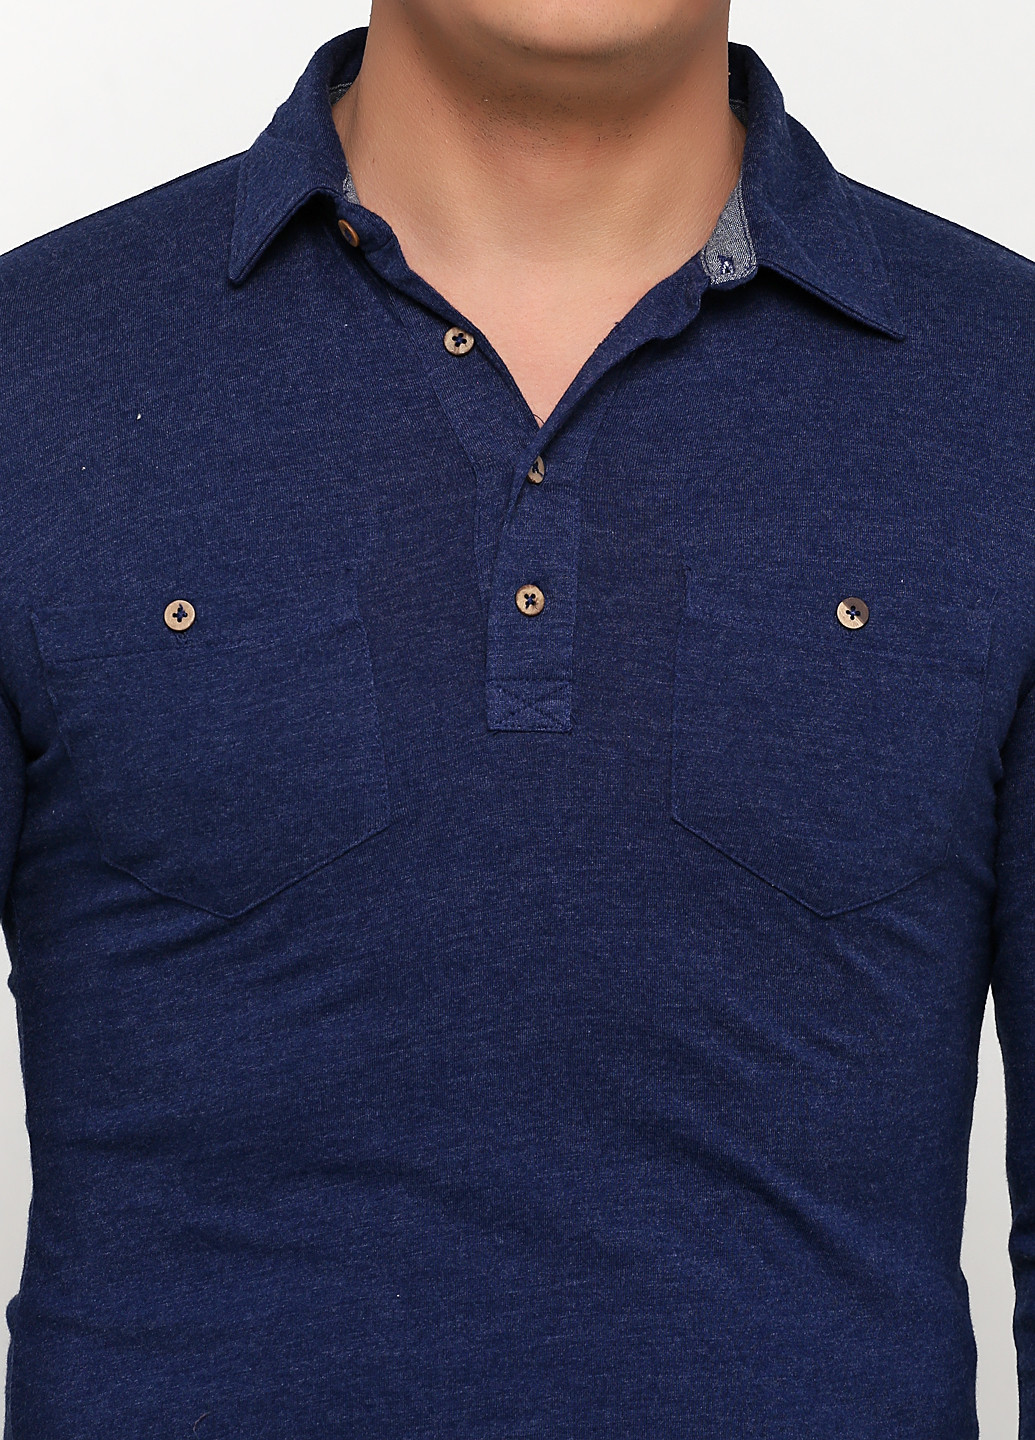 Темно-синяя футболка-поло для мужчин Celio однотонная